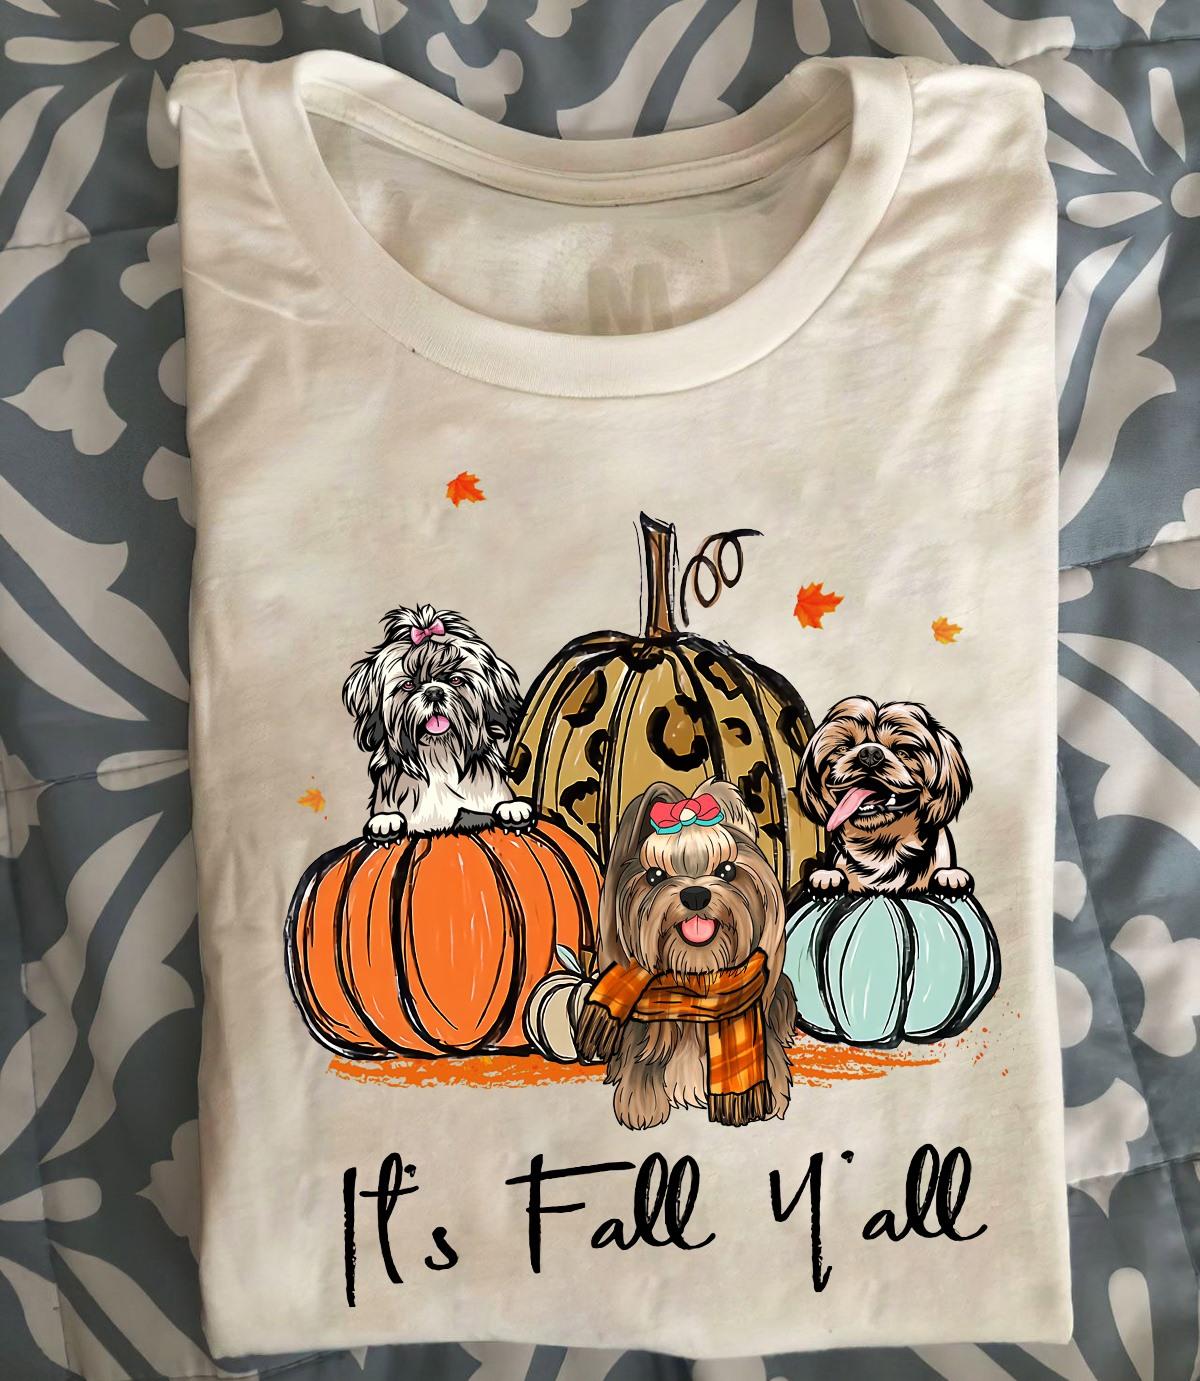 It's fall y'all - Shih Tzu dog, dog and pumpkins, fall wonderful season